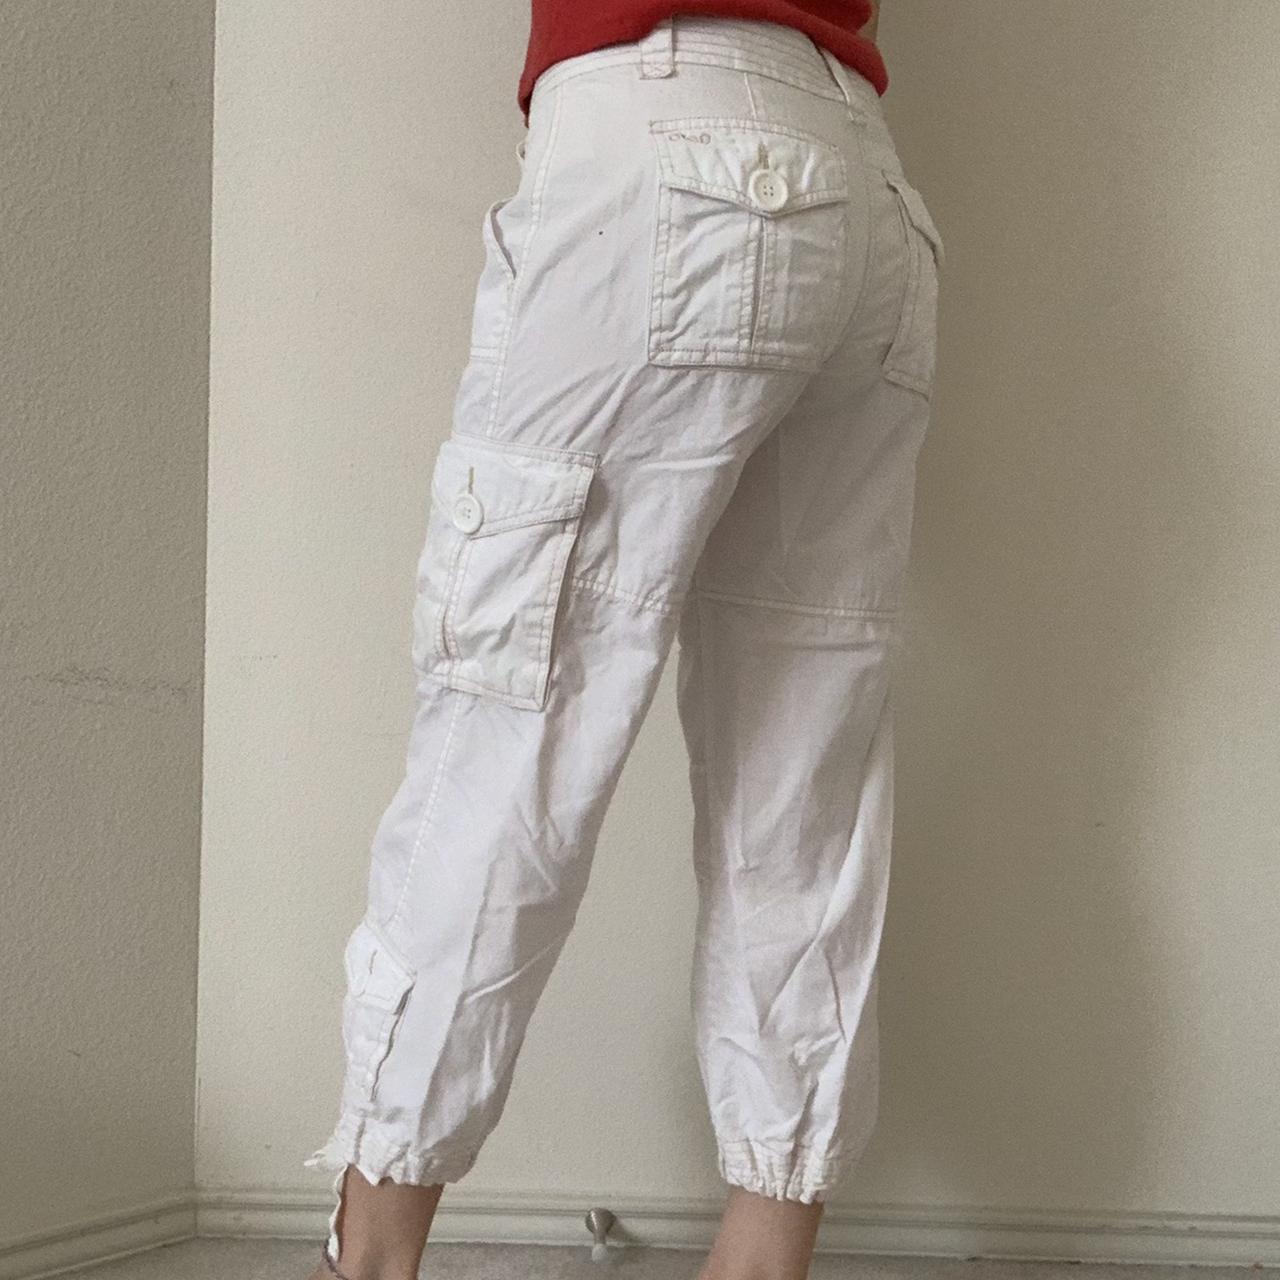 Aeropostale Women's White Trousers | Depop